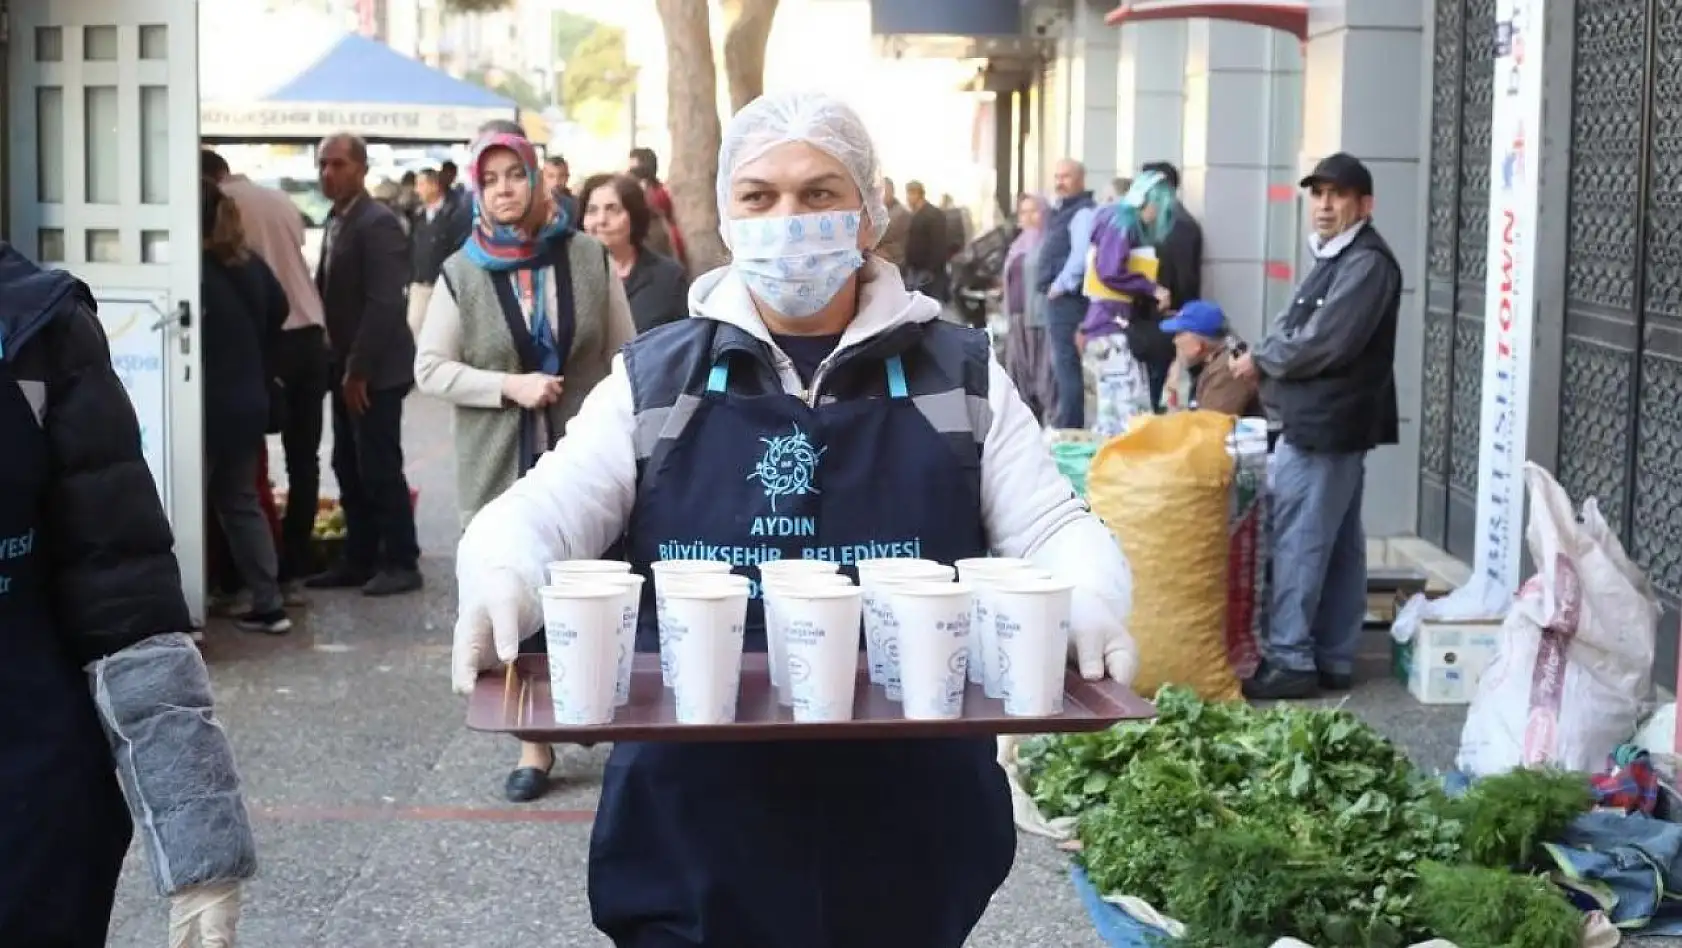 Aydın Büyükşehir Belediyesi sabahları sıcak çorba ikramına başladı